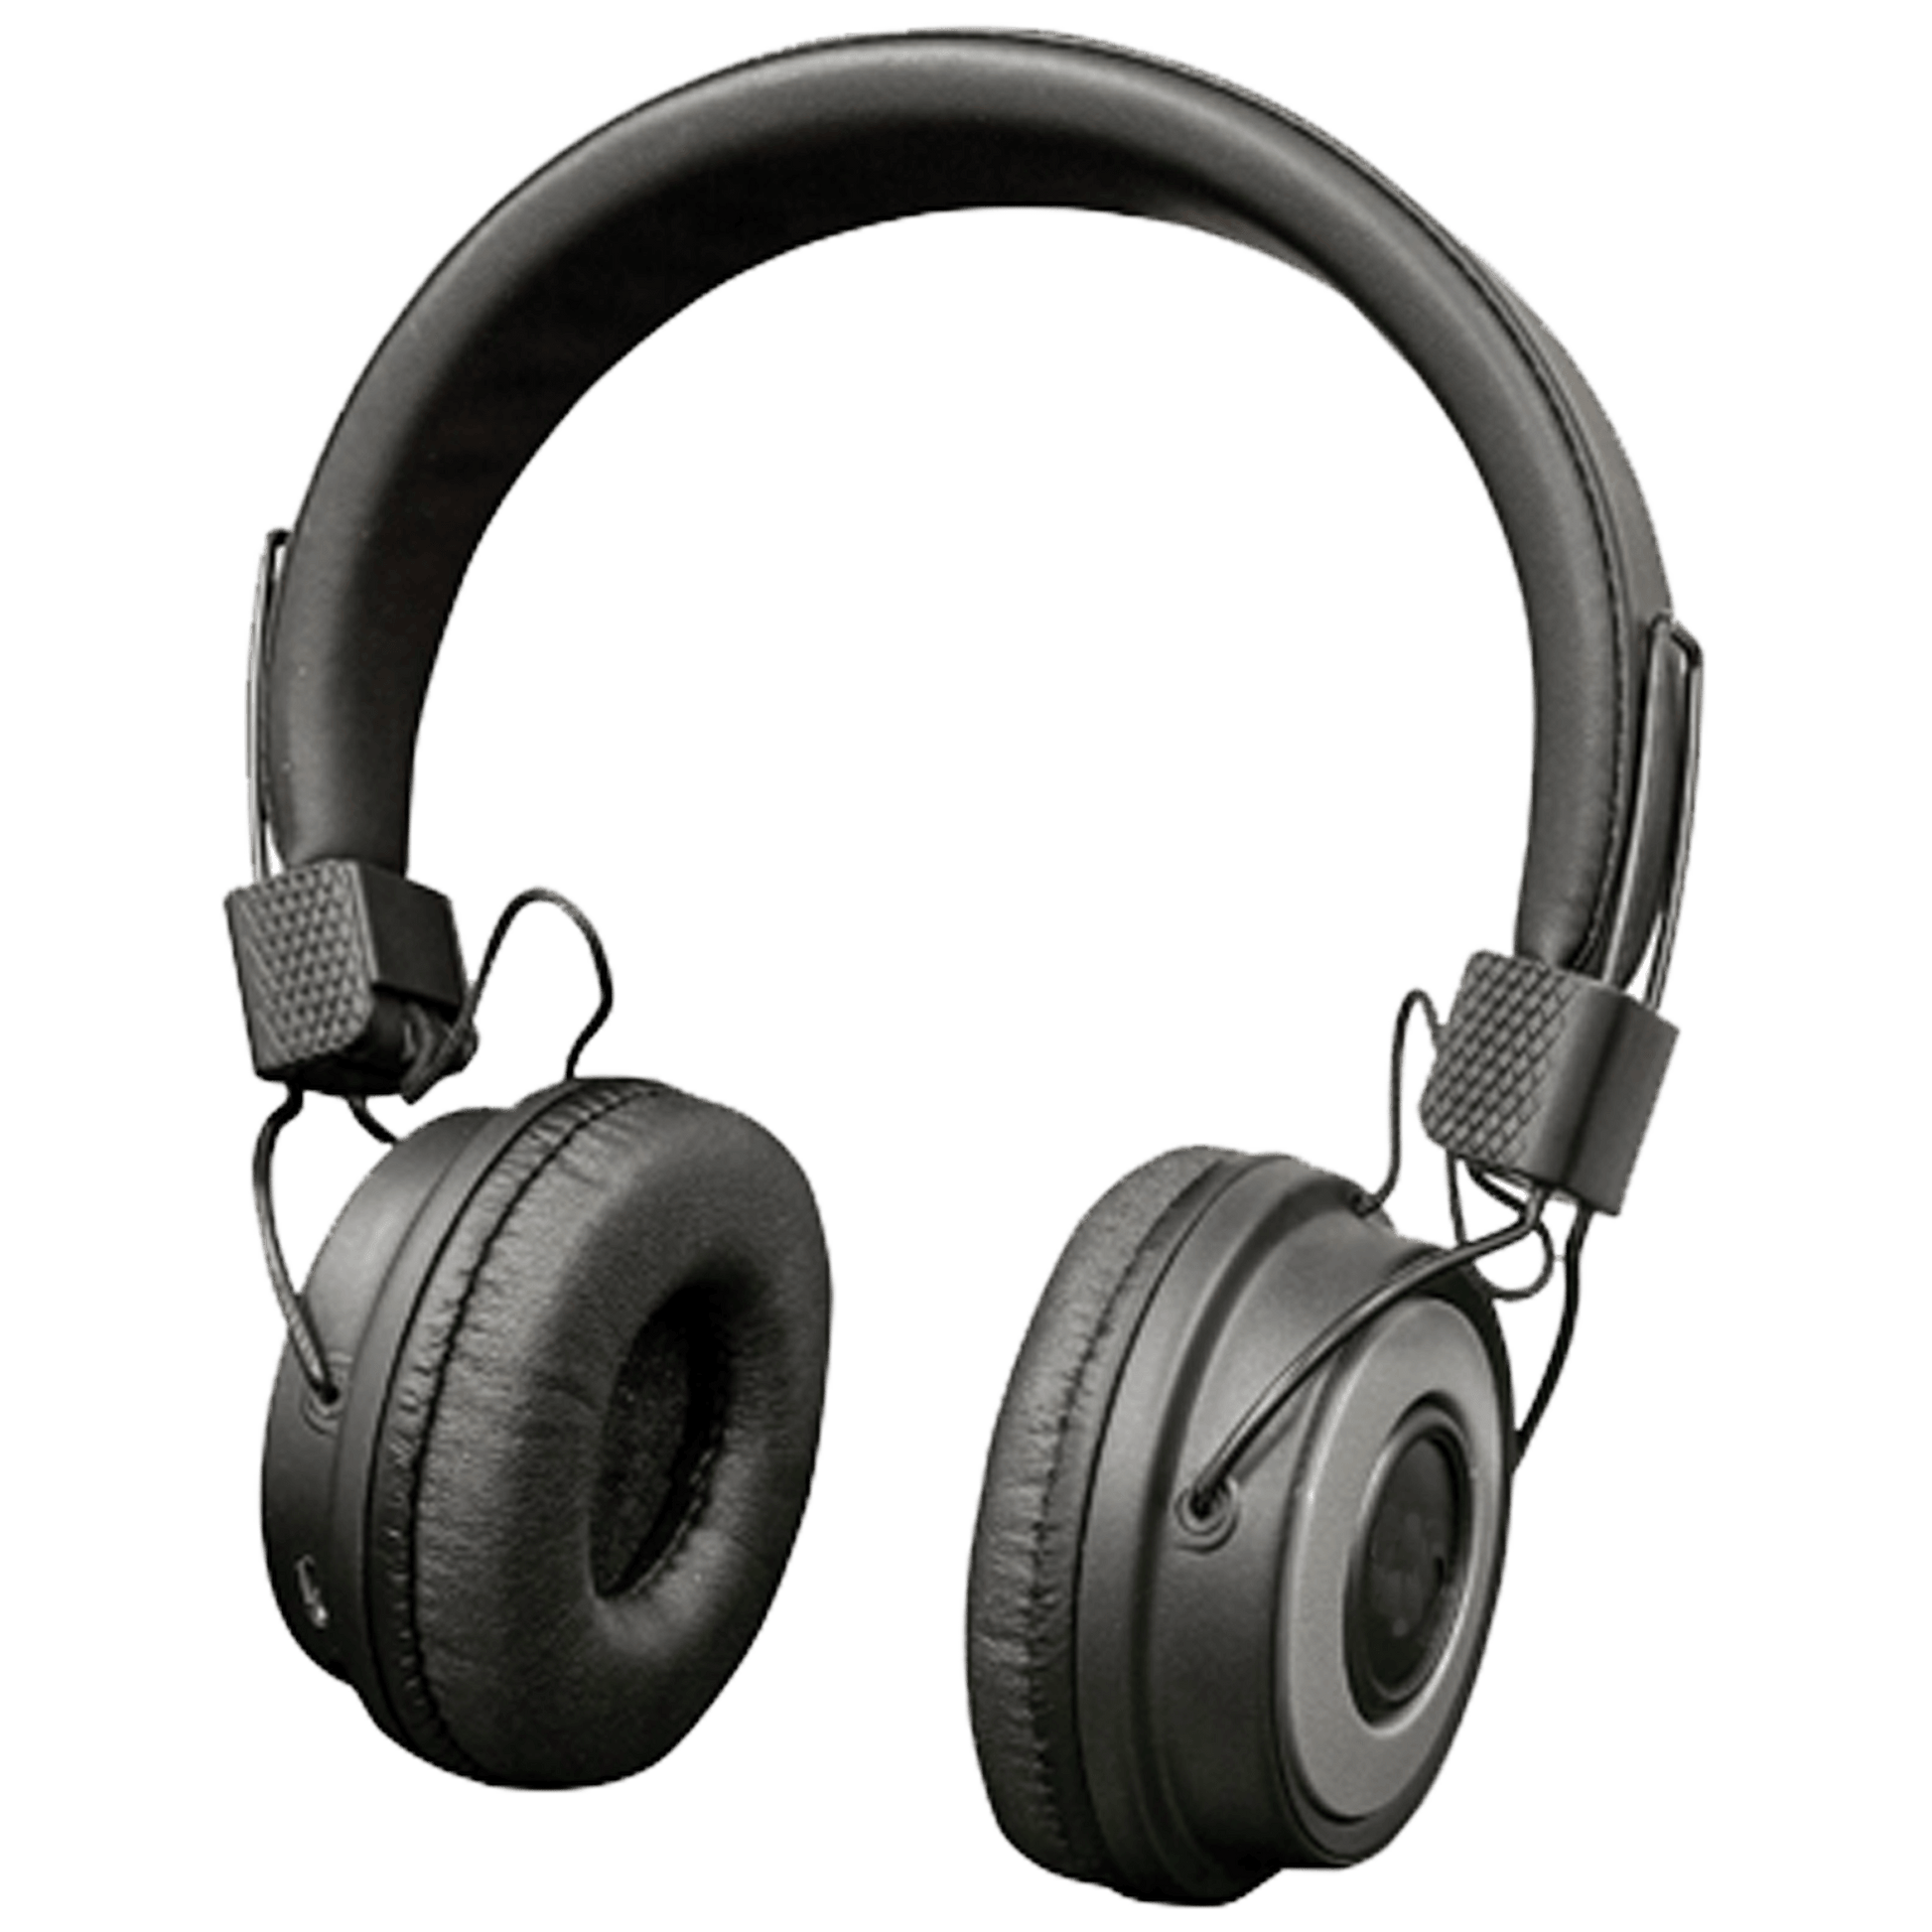 headphones frontal view 